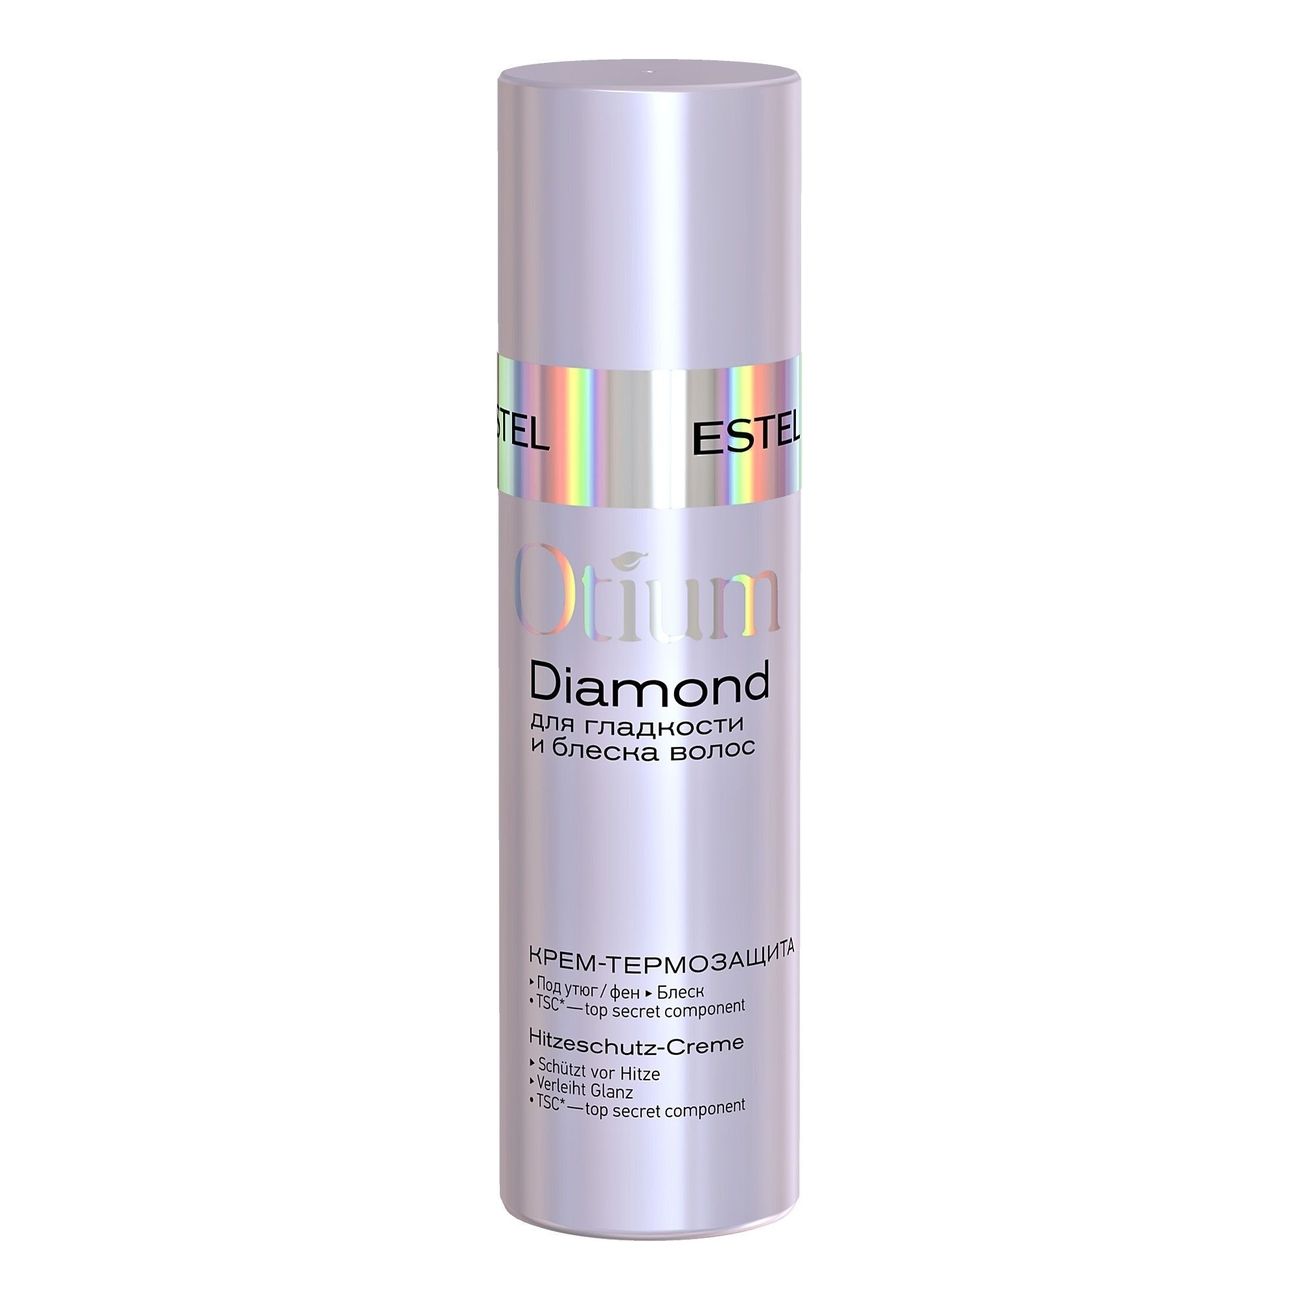 Средство для укладки волос Estel Professional Otium Diamond Cream 100 мл estel professional спрей термозащита легкая фиксация 200 мл